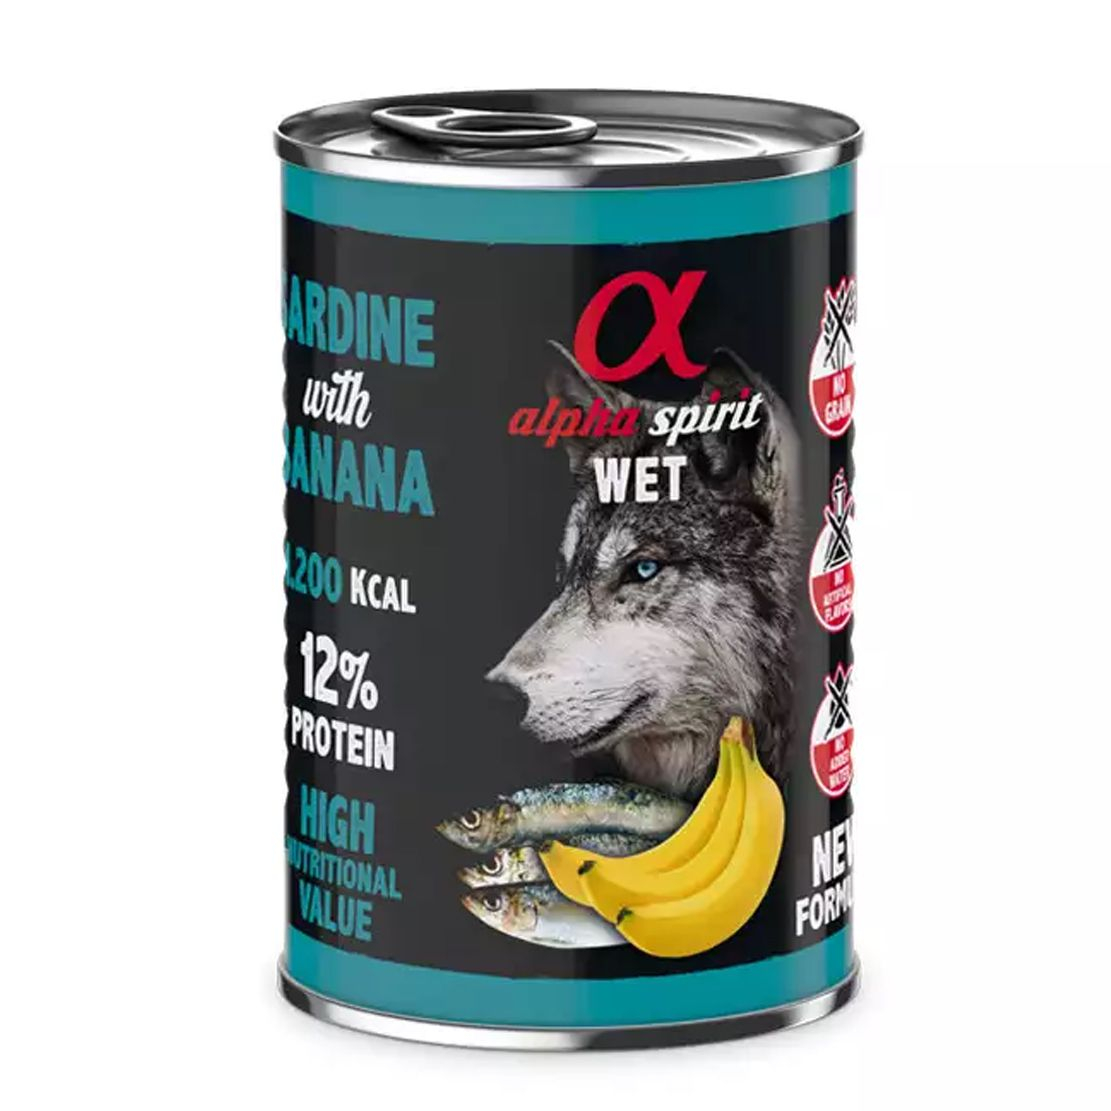 Alpha Spirit Dog Wet - Sardine & Banana 400 g